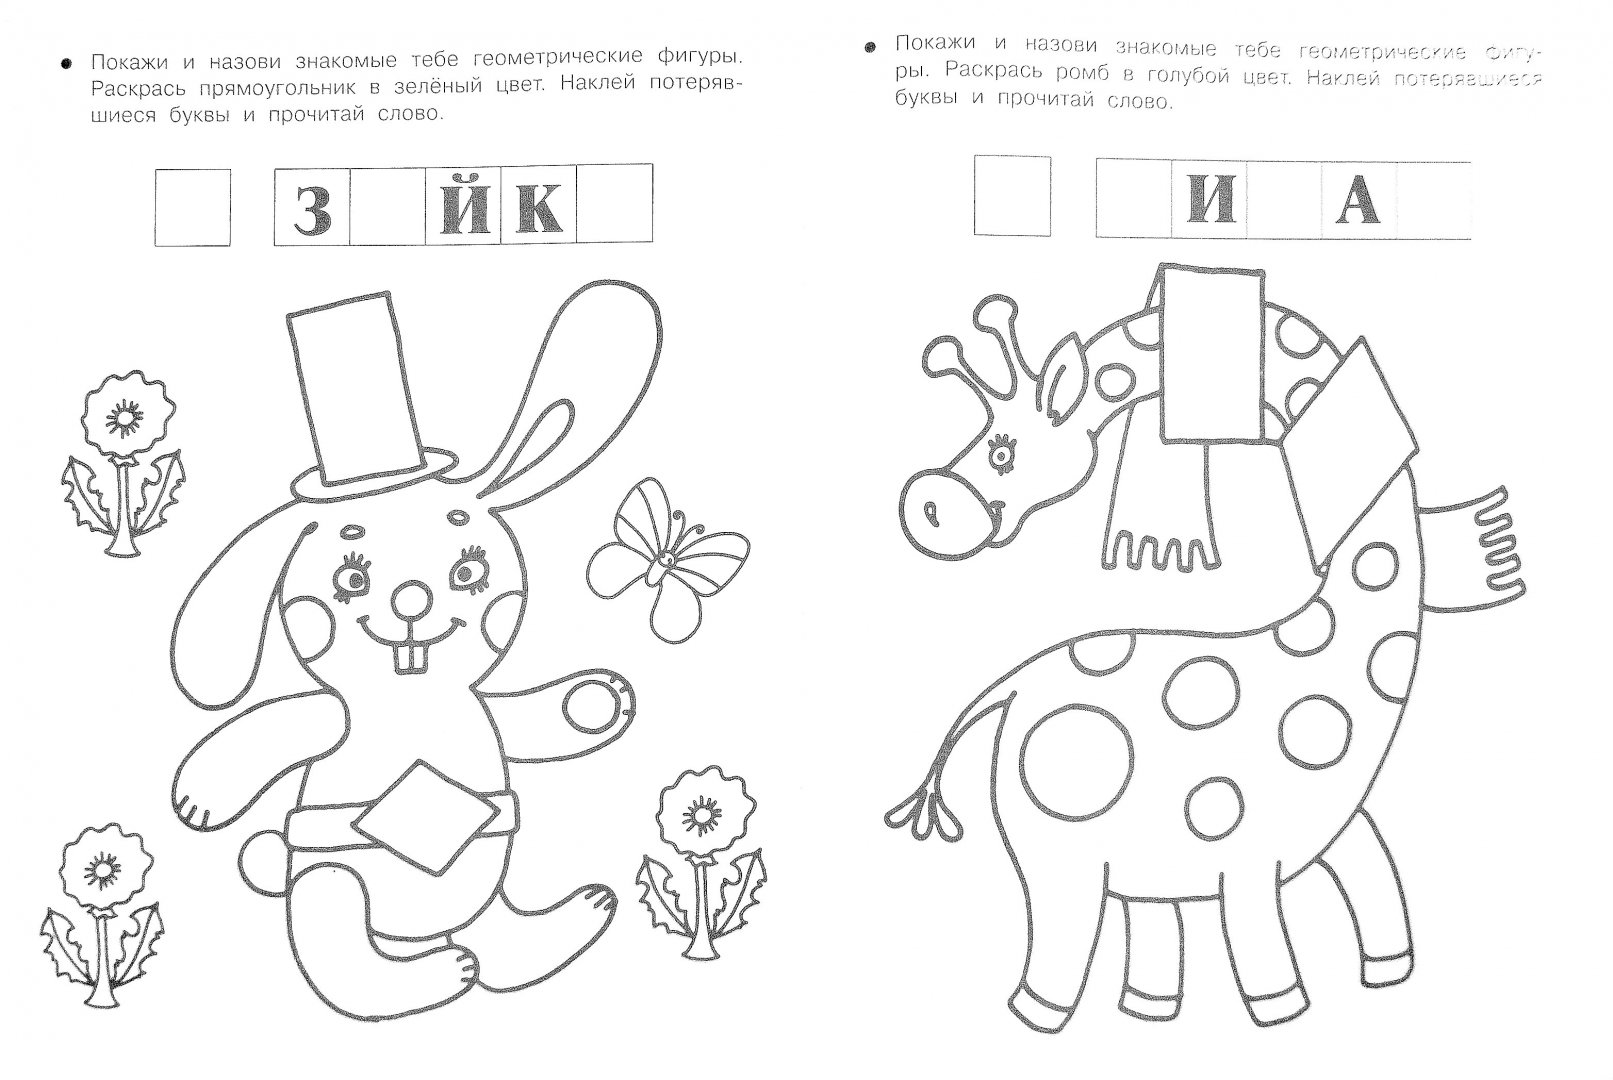 Иллюстрация 1 из 4 для Цвета, которые должен знать малыш | Лабиринт - книги. Источник: Лабиринт